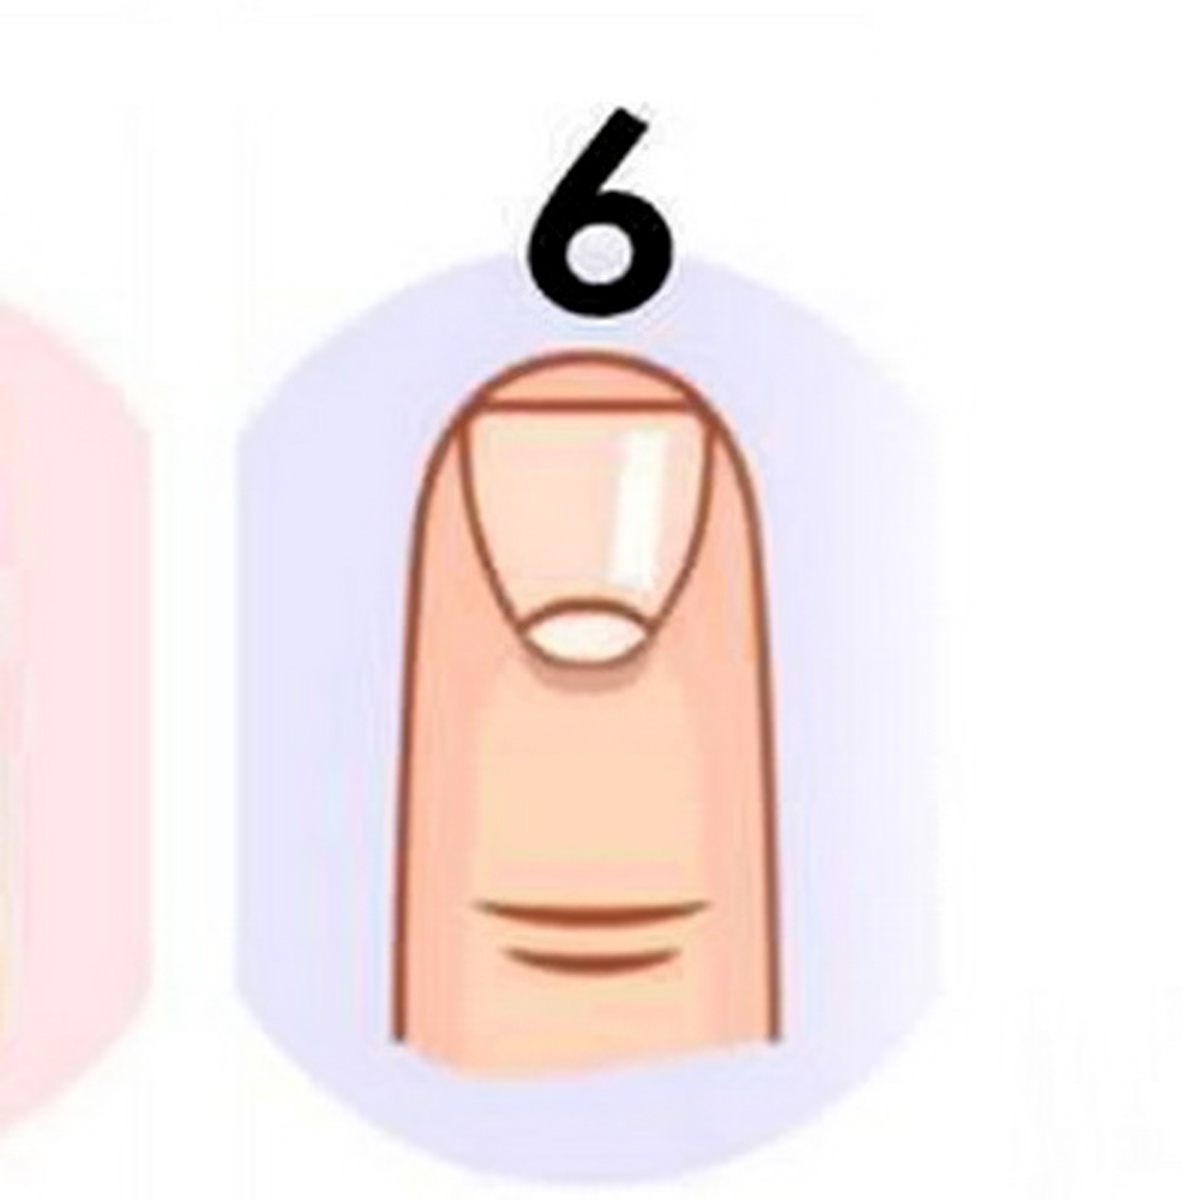 شکل ناخن شماره 6 در تست شخصیت شناسی براساس شکل ناخن